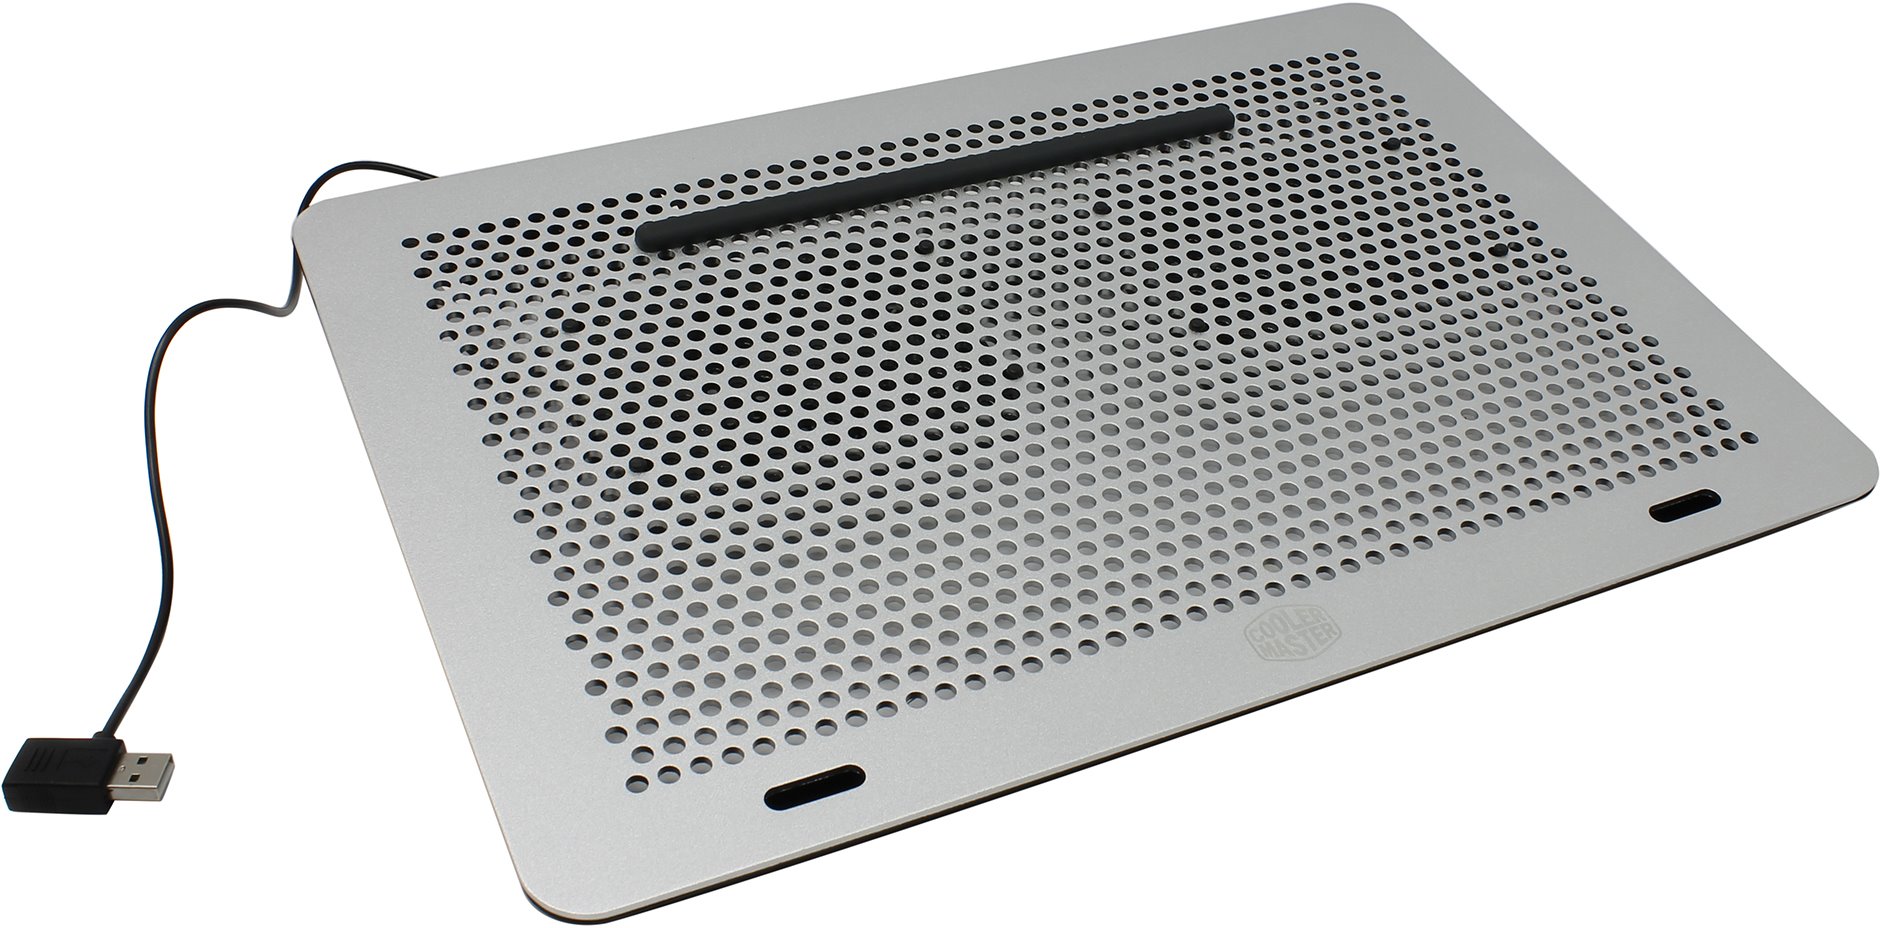 Охлаждающая подставка для ноутбука Cooler Master MasterNotepal Pro MNY-SMTS-20FY-R1